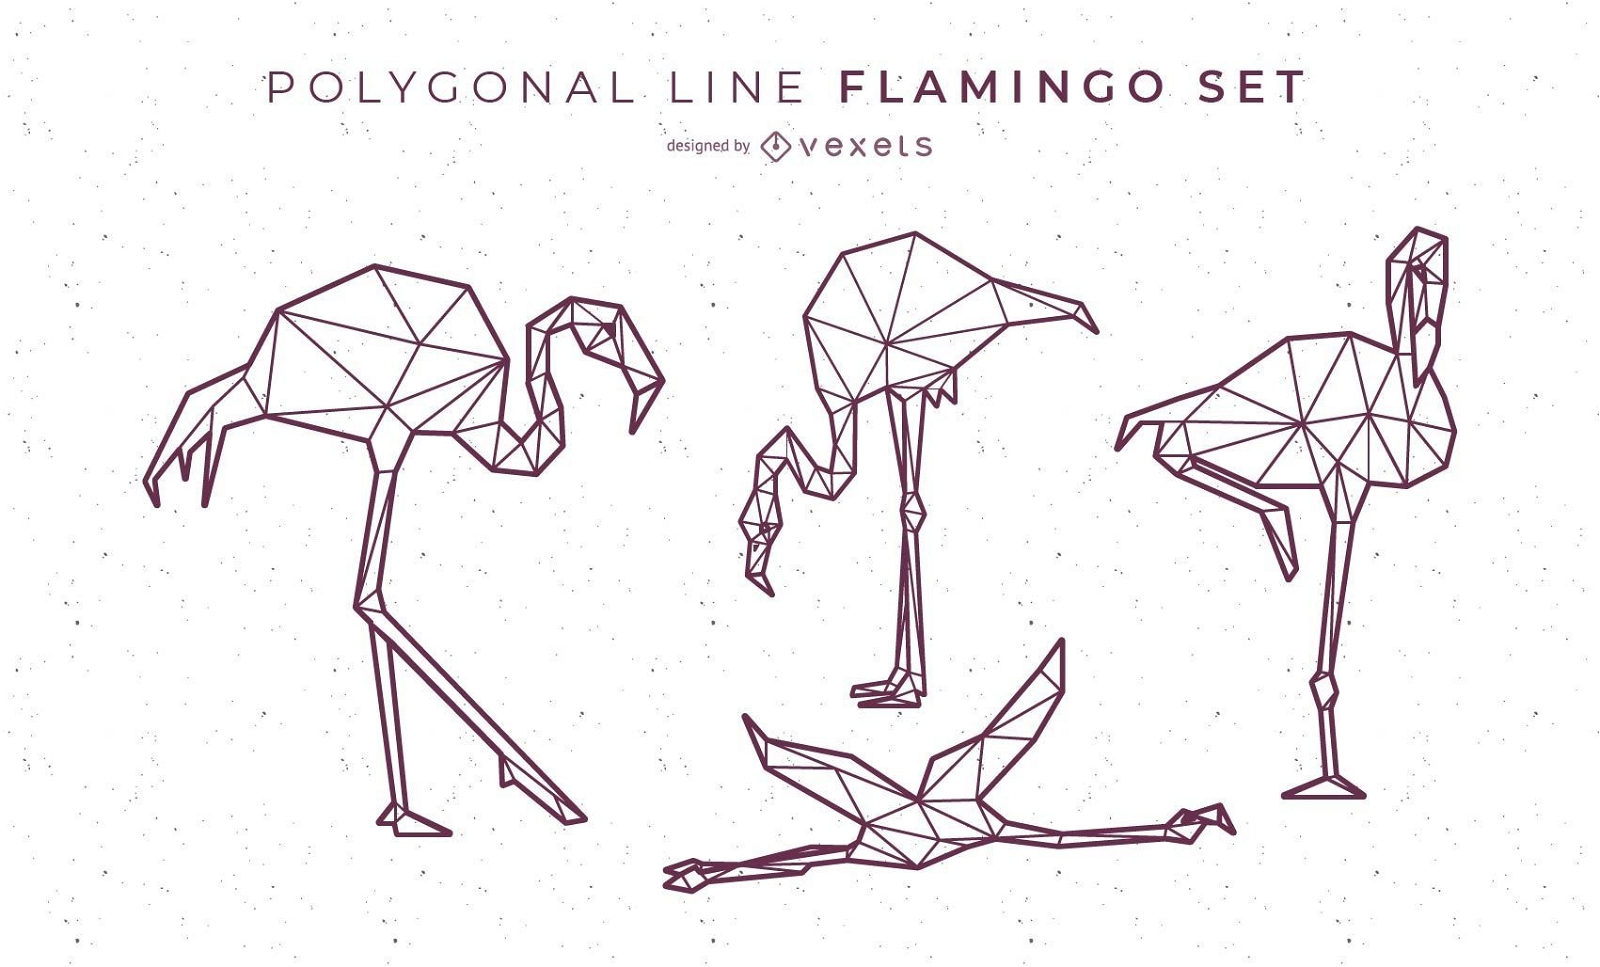 Design de Flamingo de Linha Poligonal